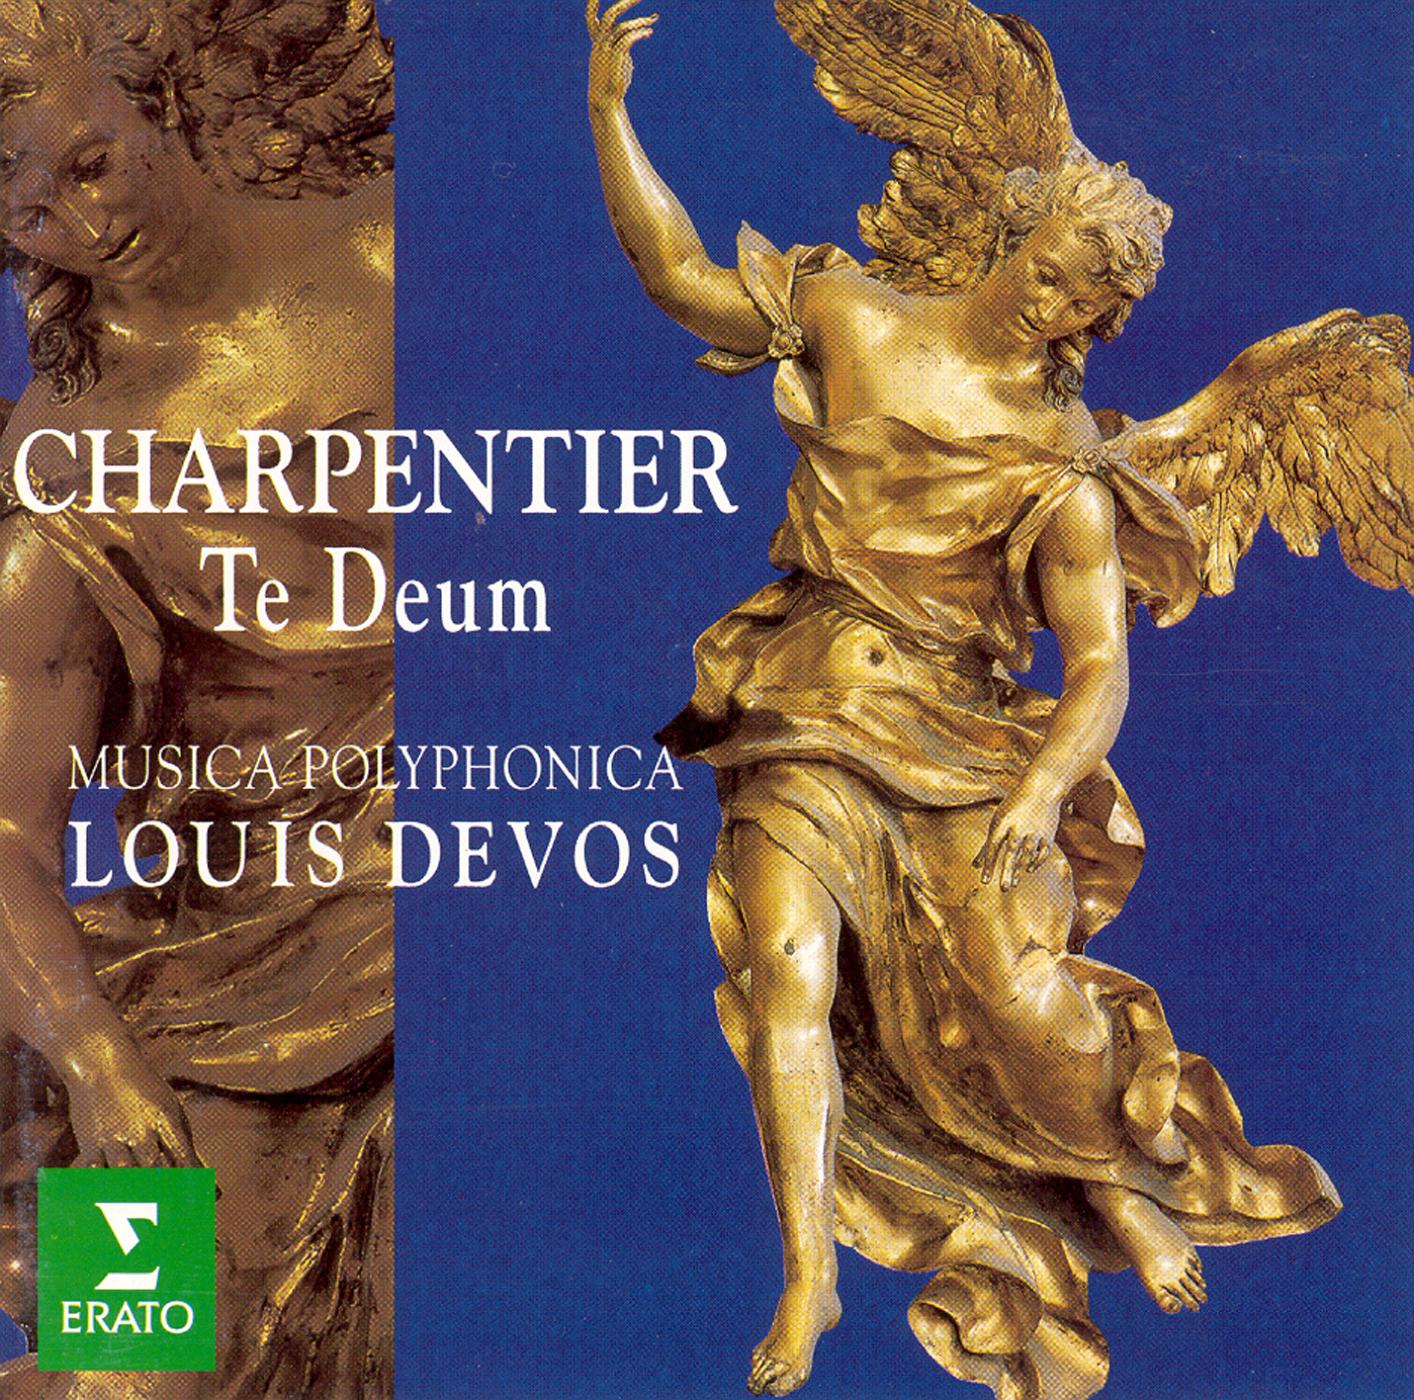 Charpentier:Canticum in honorem Sancti Ludovici regis galliae H365 : I Overture